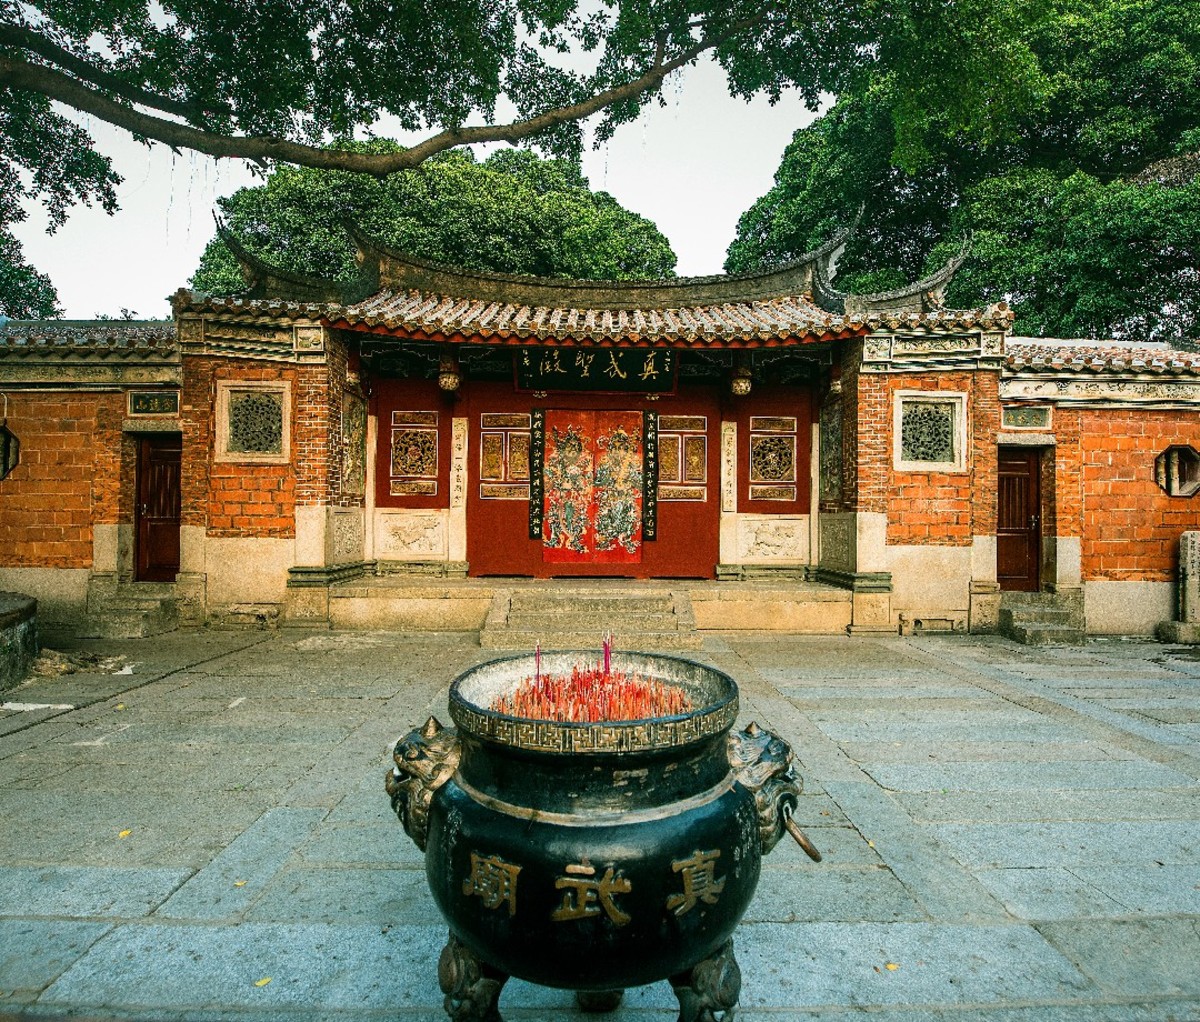 A temple in Quanzhou, China.